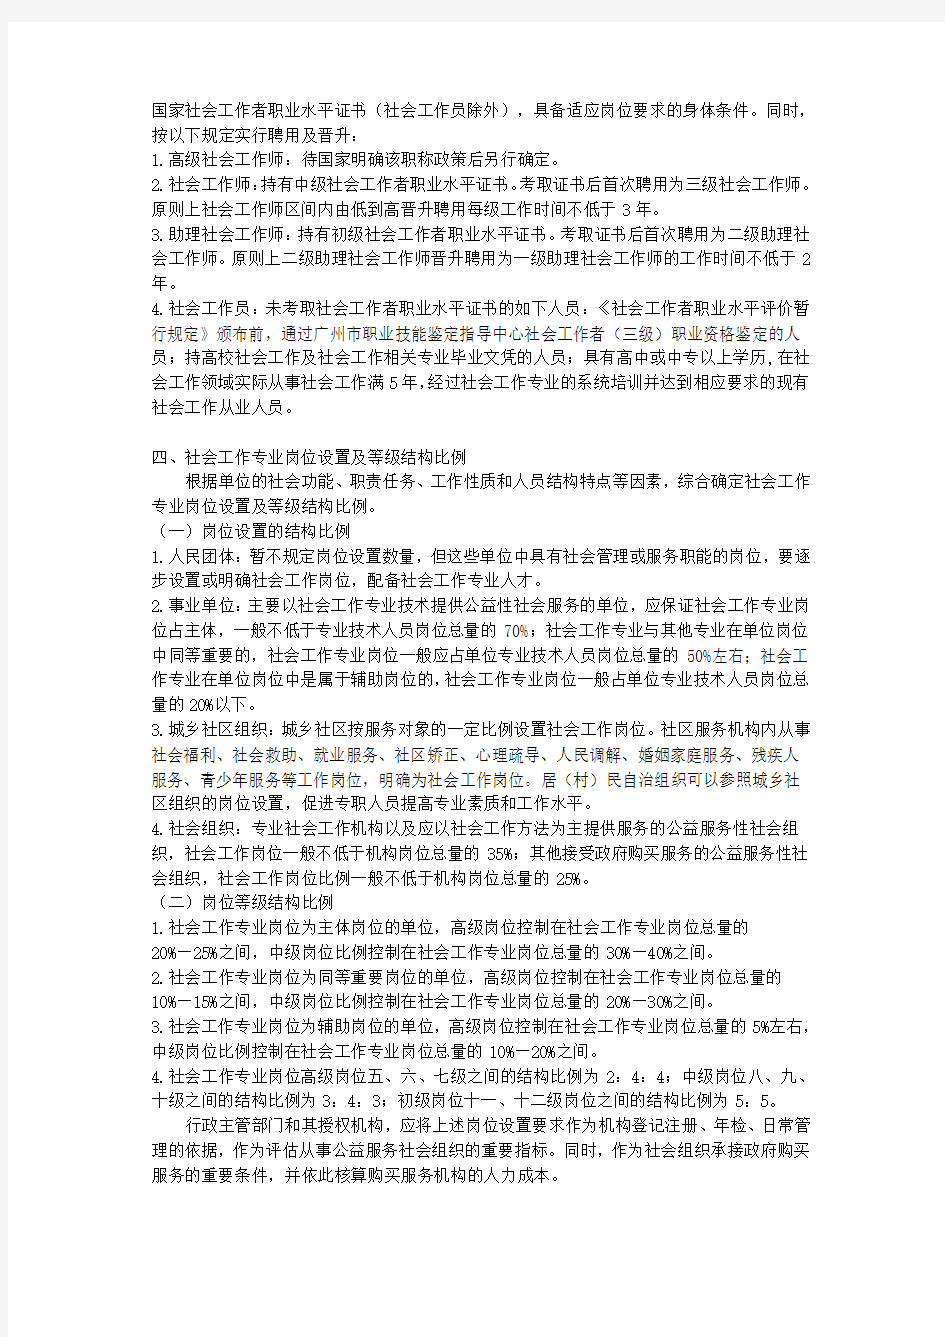 广州市社会工作专业岗位设置及社会工作专业人员薪酬待遇实施办法(试行)